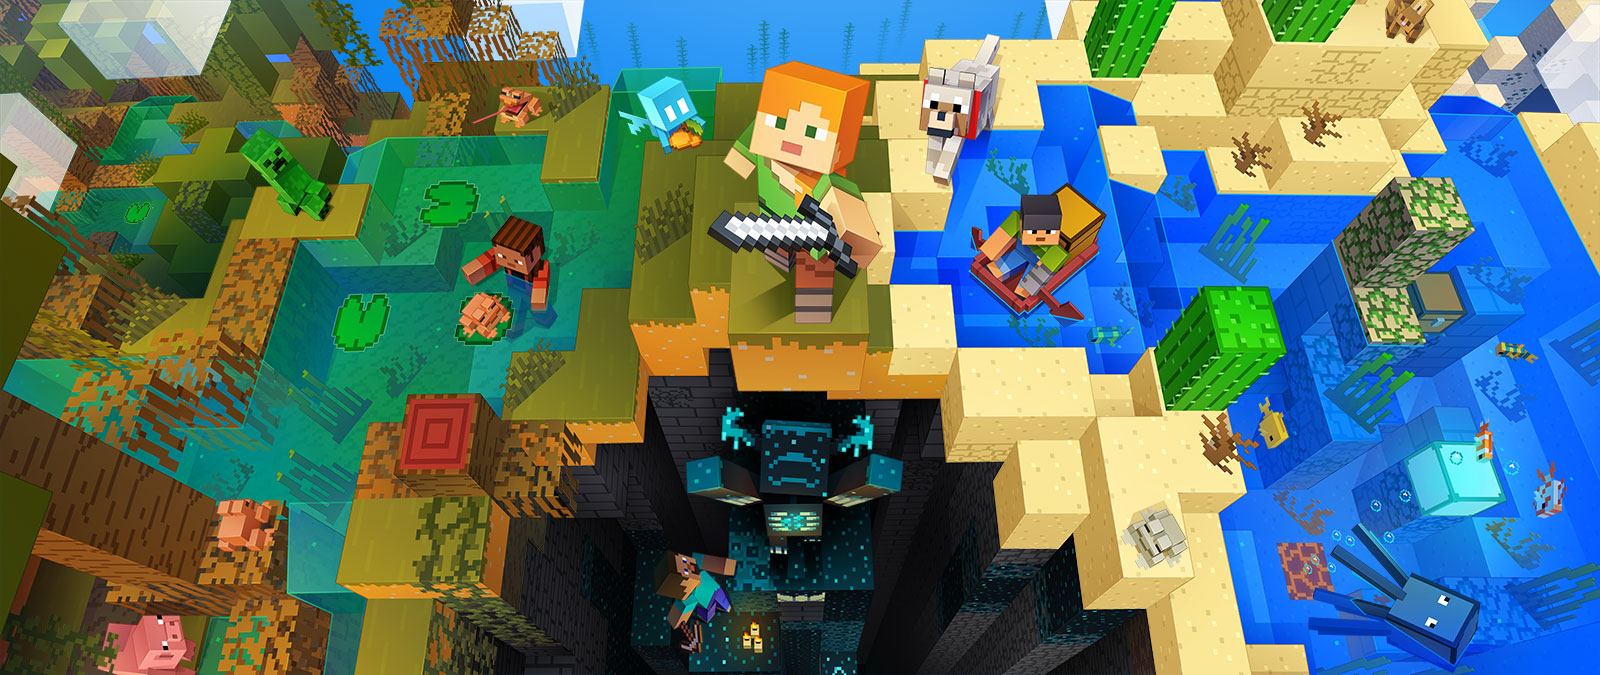 Karakterer fra Minecraft gjør ulike aktiviteter i Minecraft